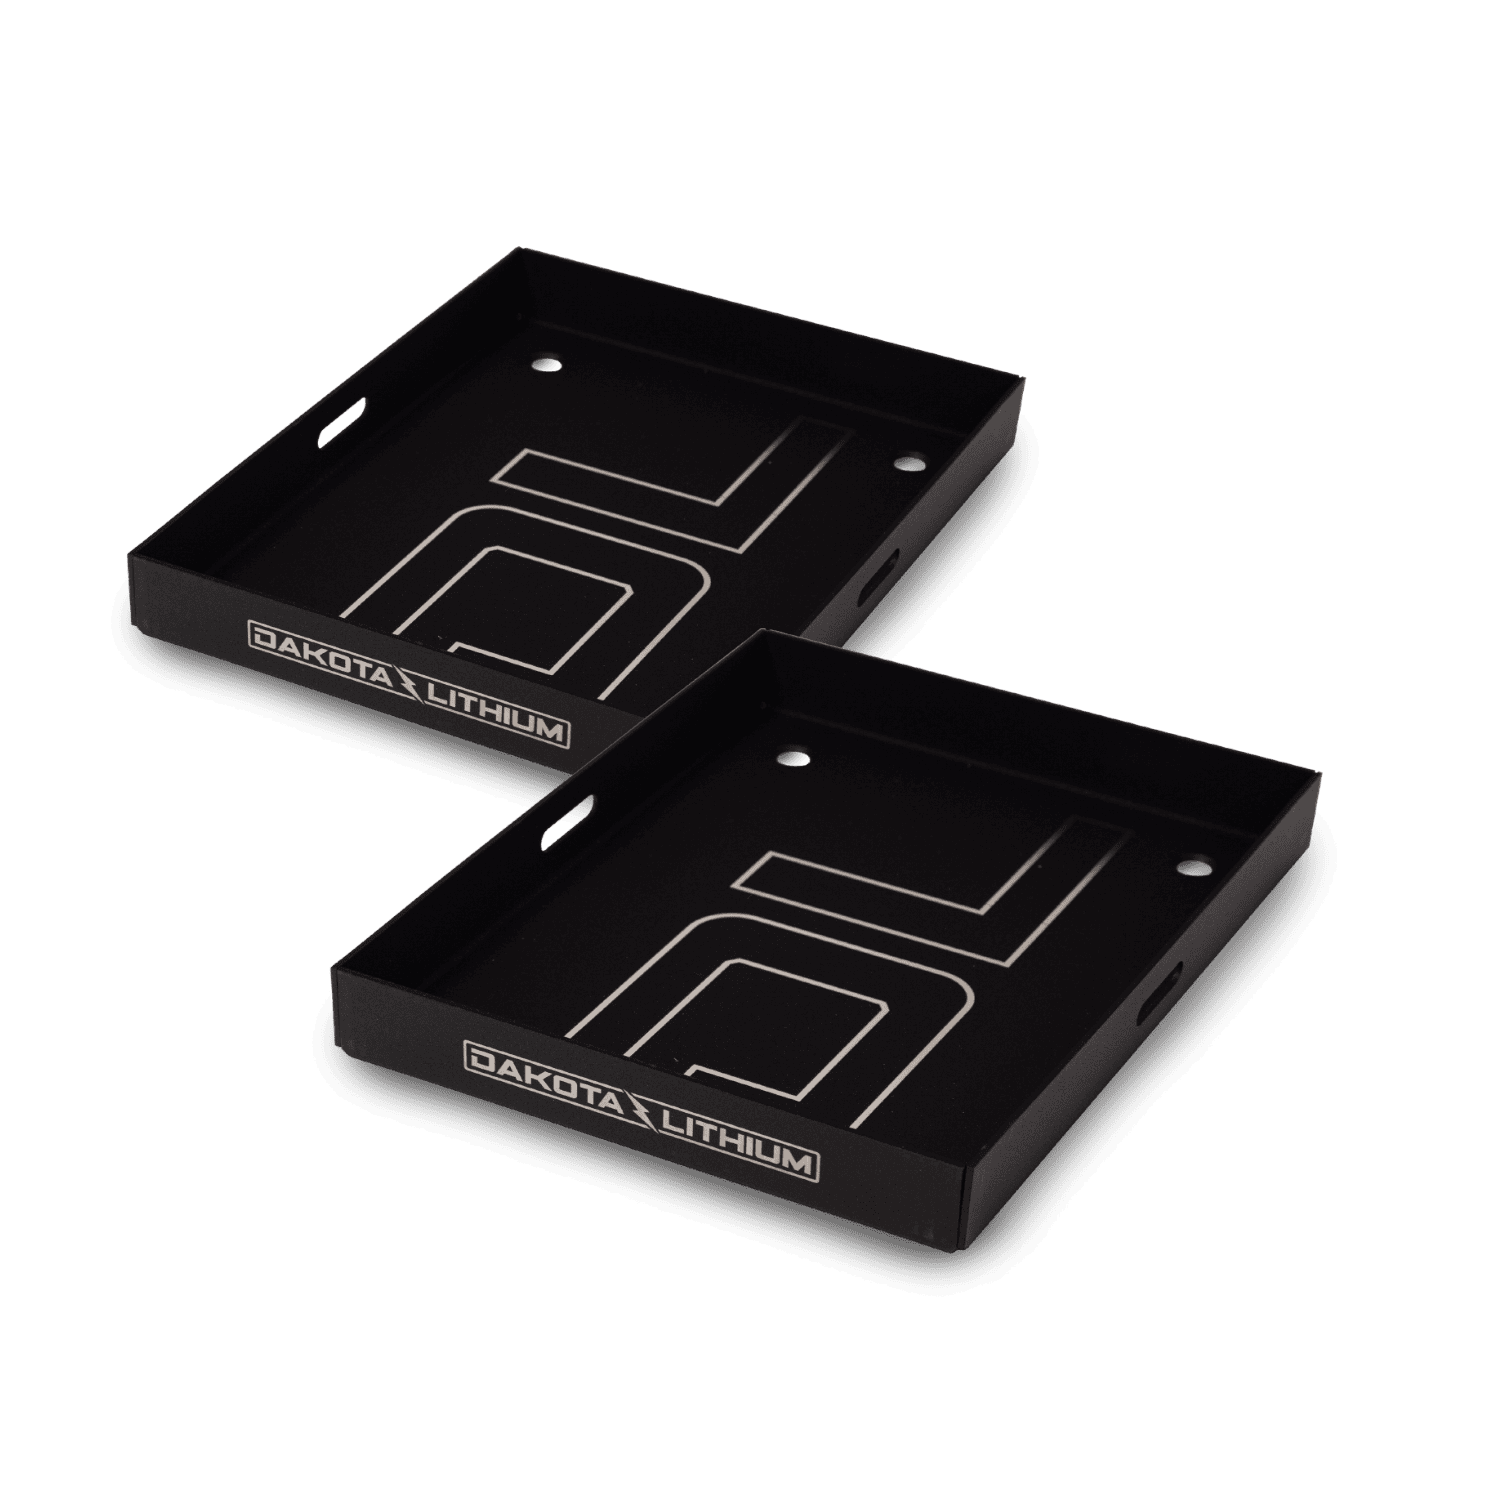 2-Pack of Marine Battery Trays for Dakota Lithium Batteries